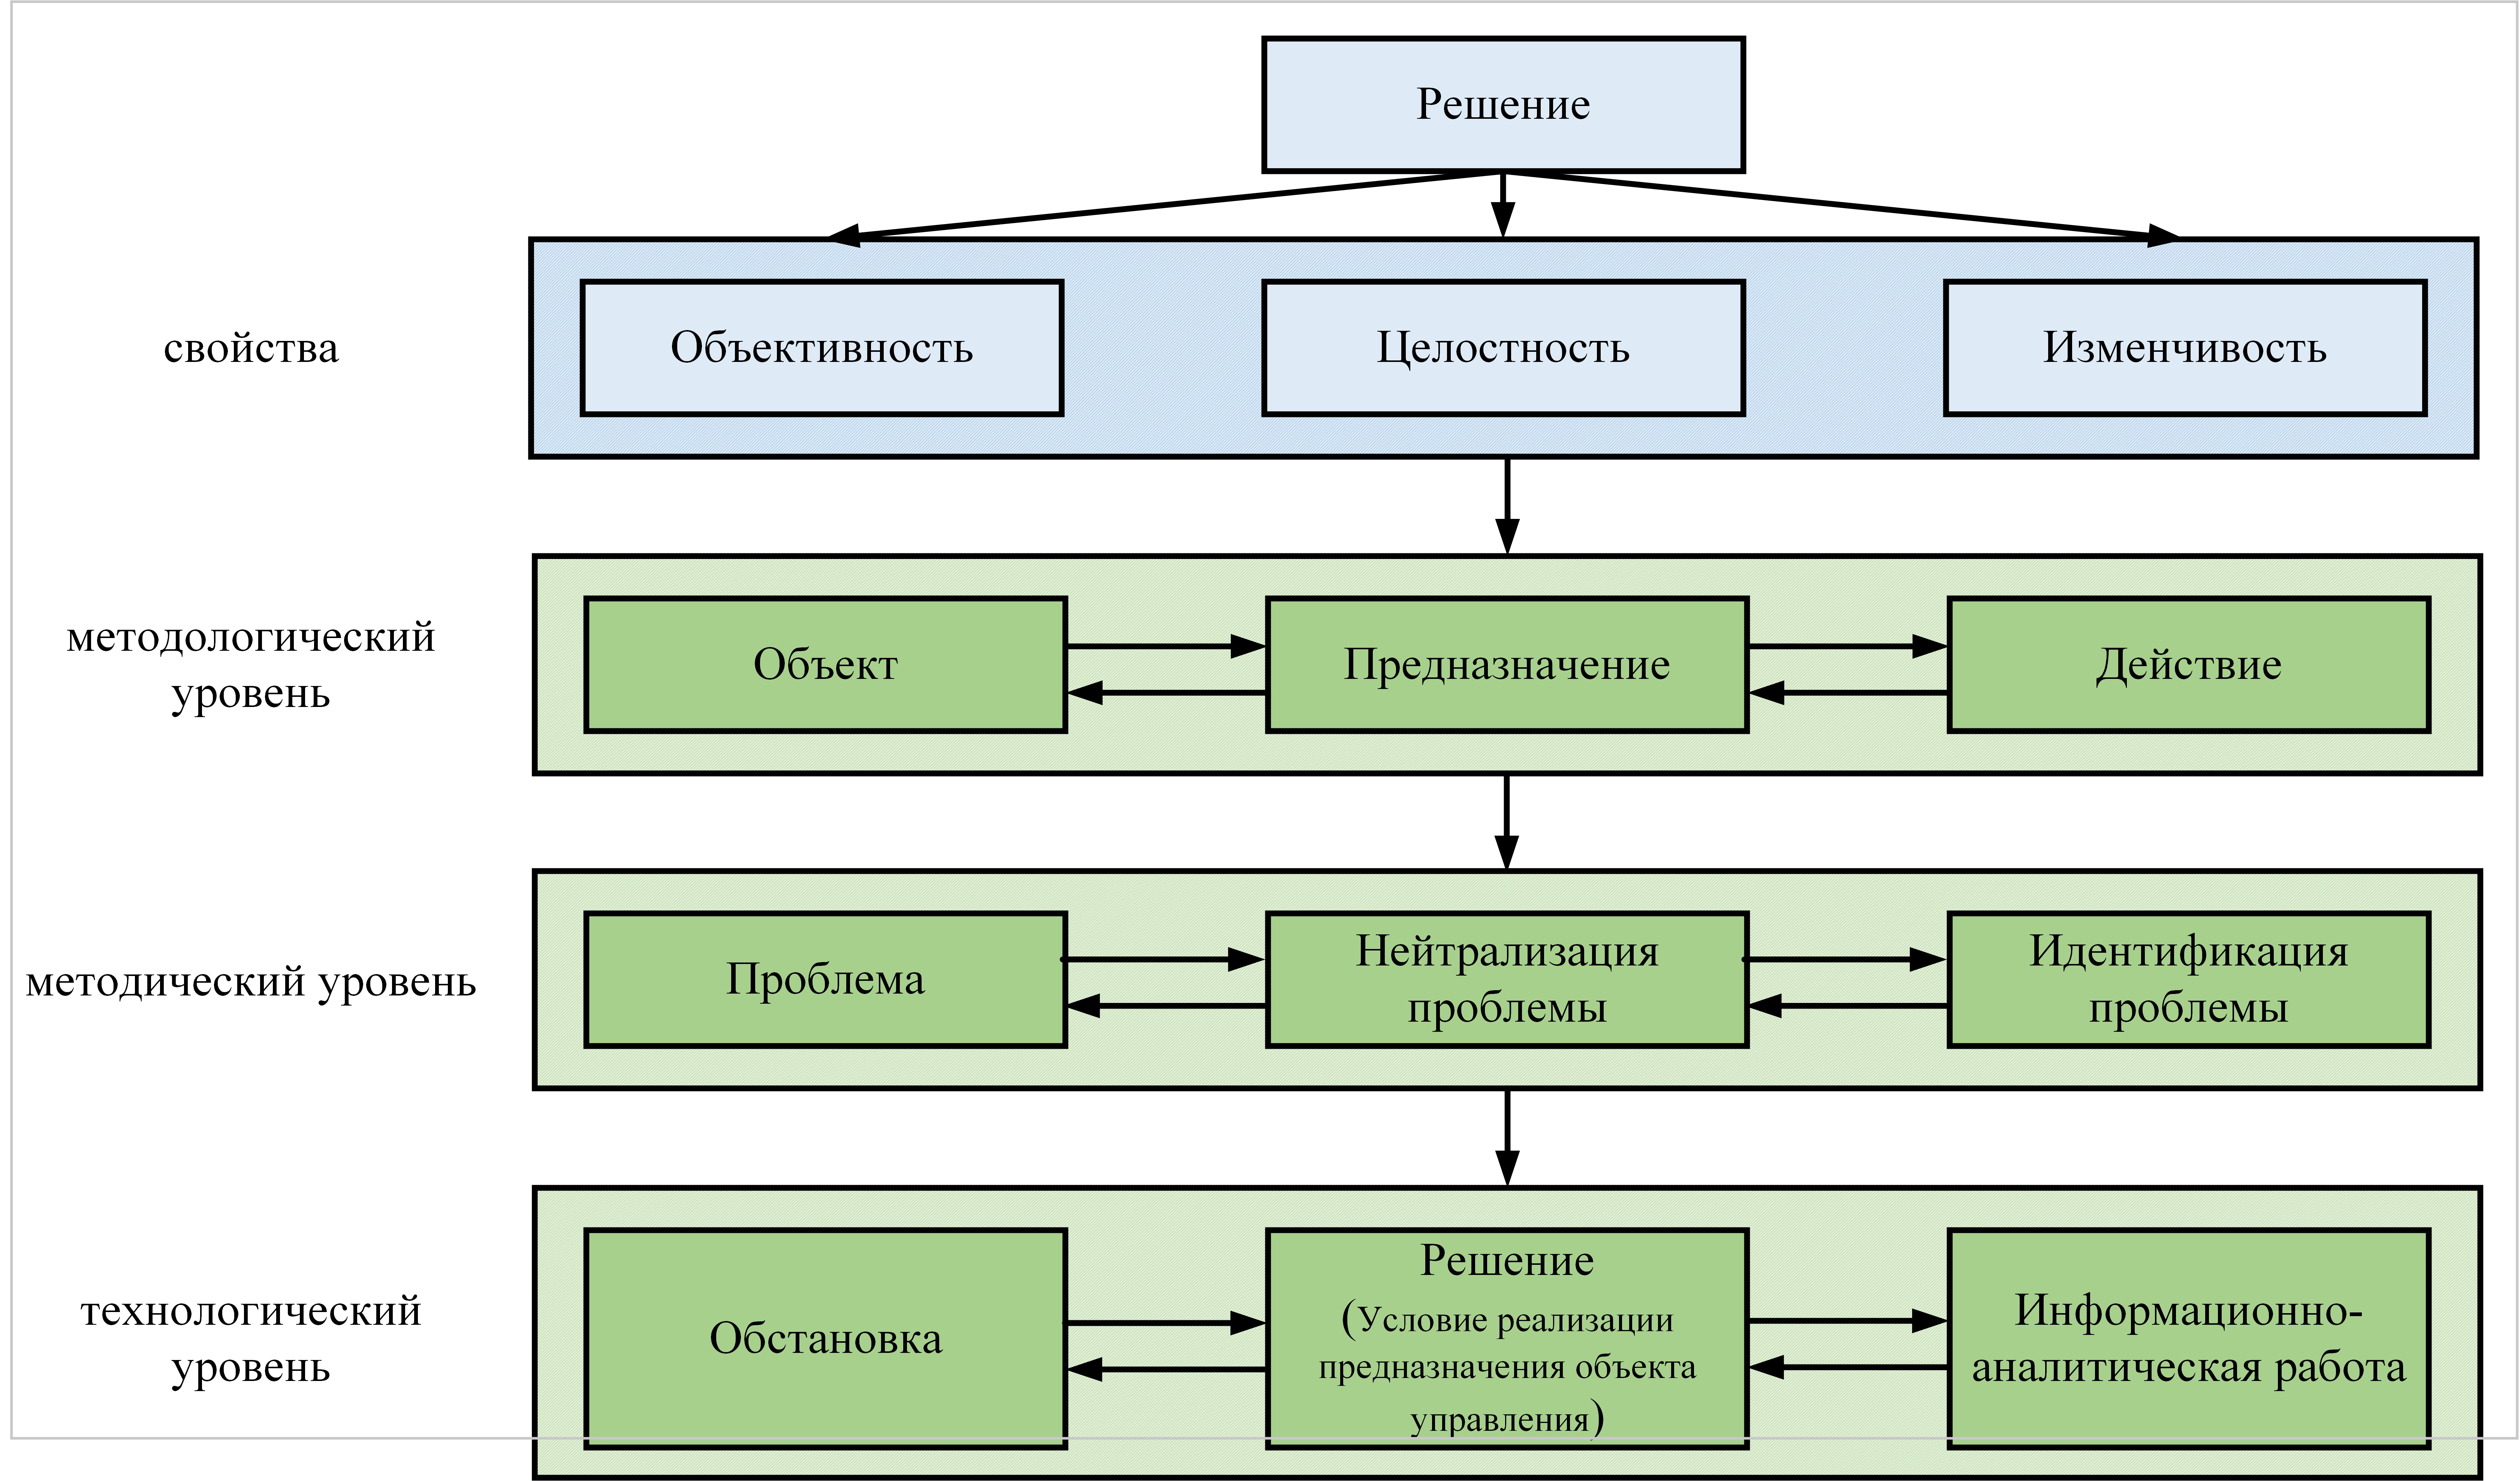 Структурная схема развёртывания содержания категории «Решение» как процесса